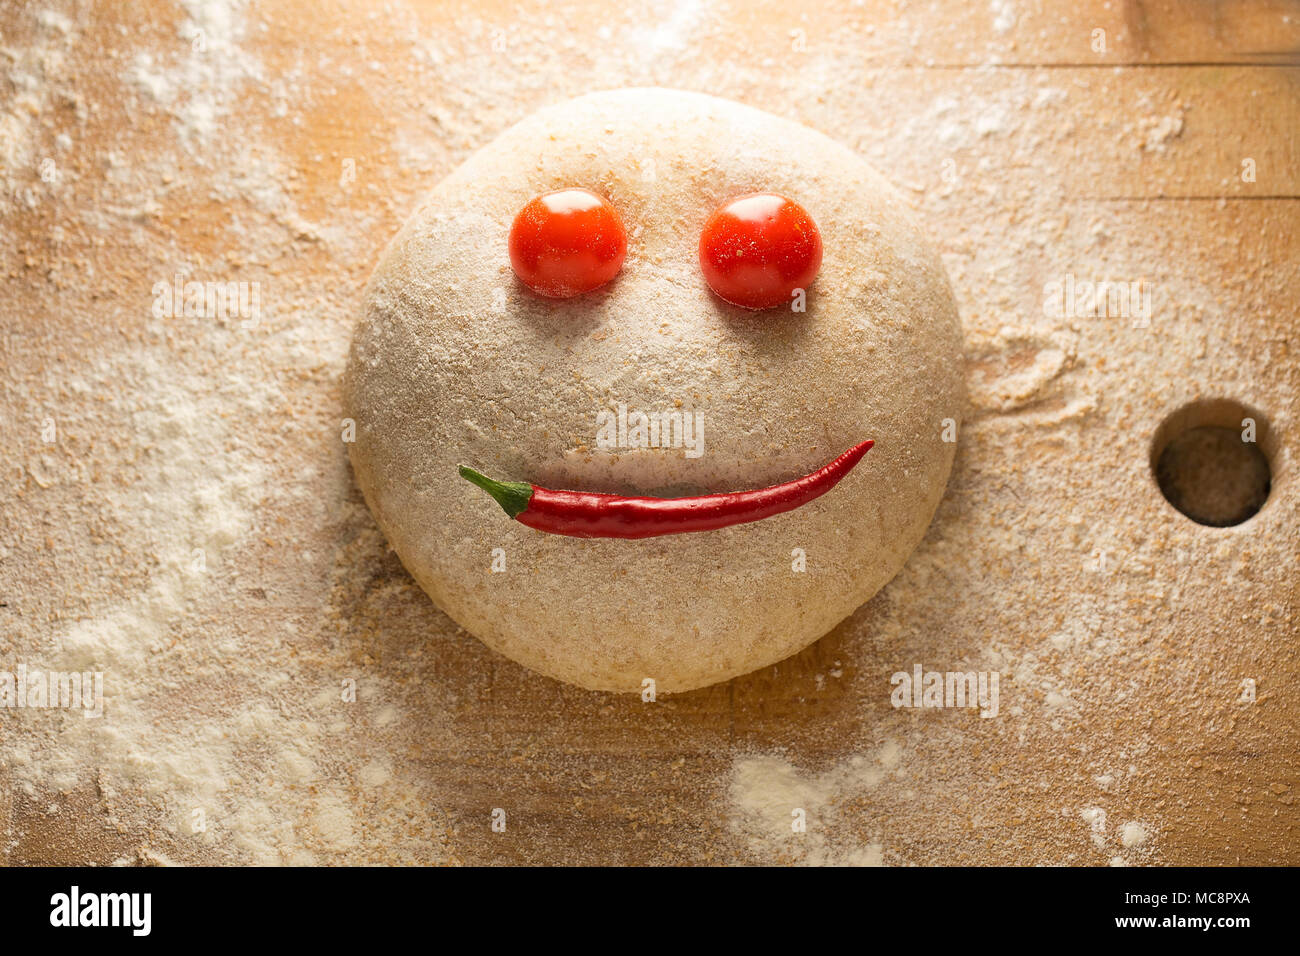 Ball der Teig wie ein glückliches Gesicht, auf einer hölzernen Oberfläche geformt, mit Tomaten und Paprika. Stockfoto